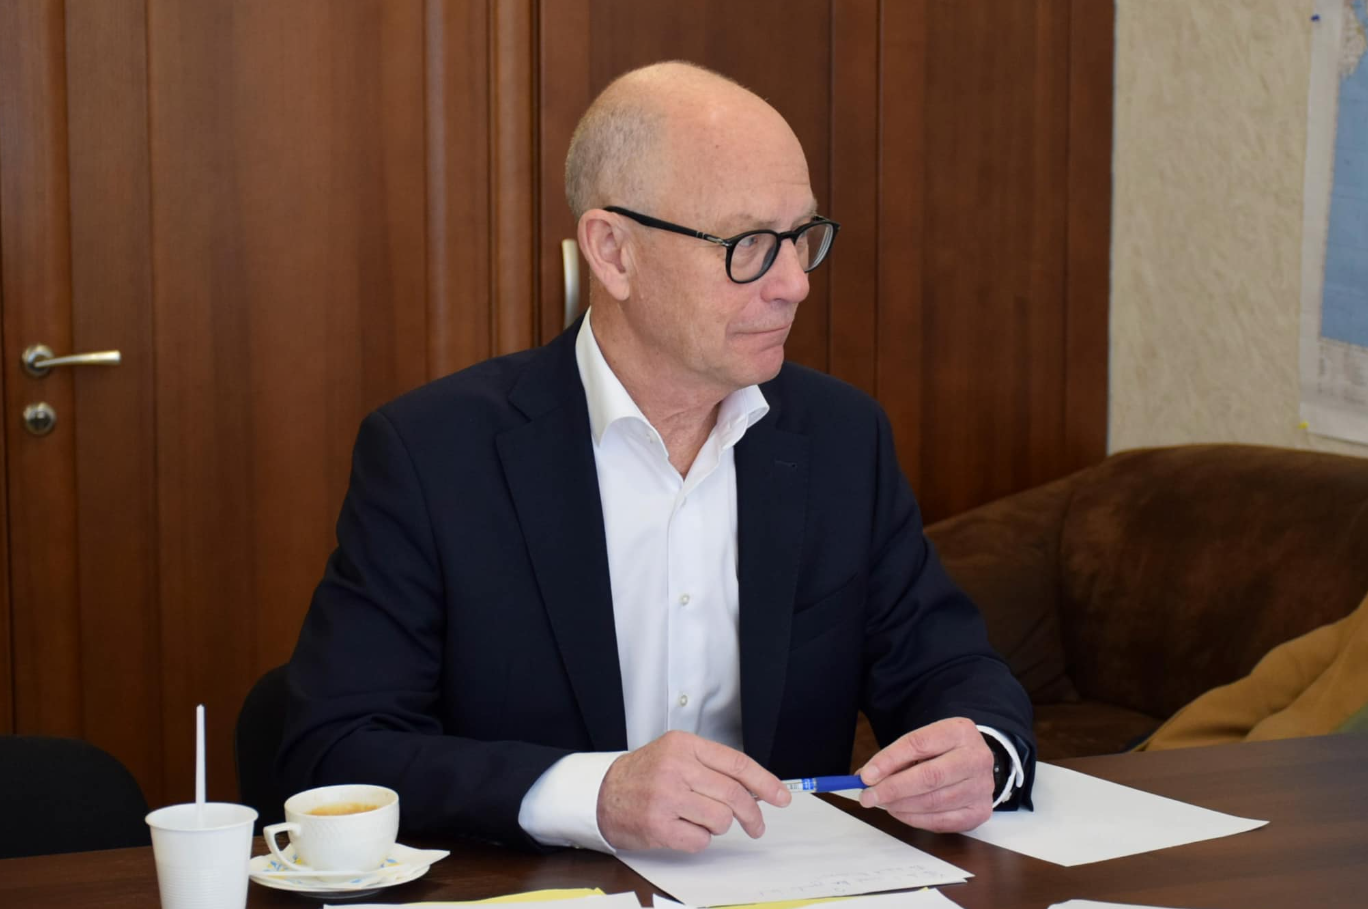 Данія підписала перші контракти щодо інвестицій в Україні: посол розповів деталі 